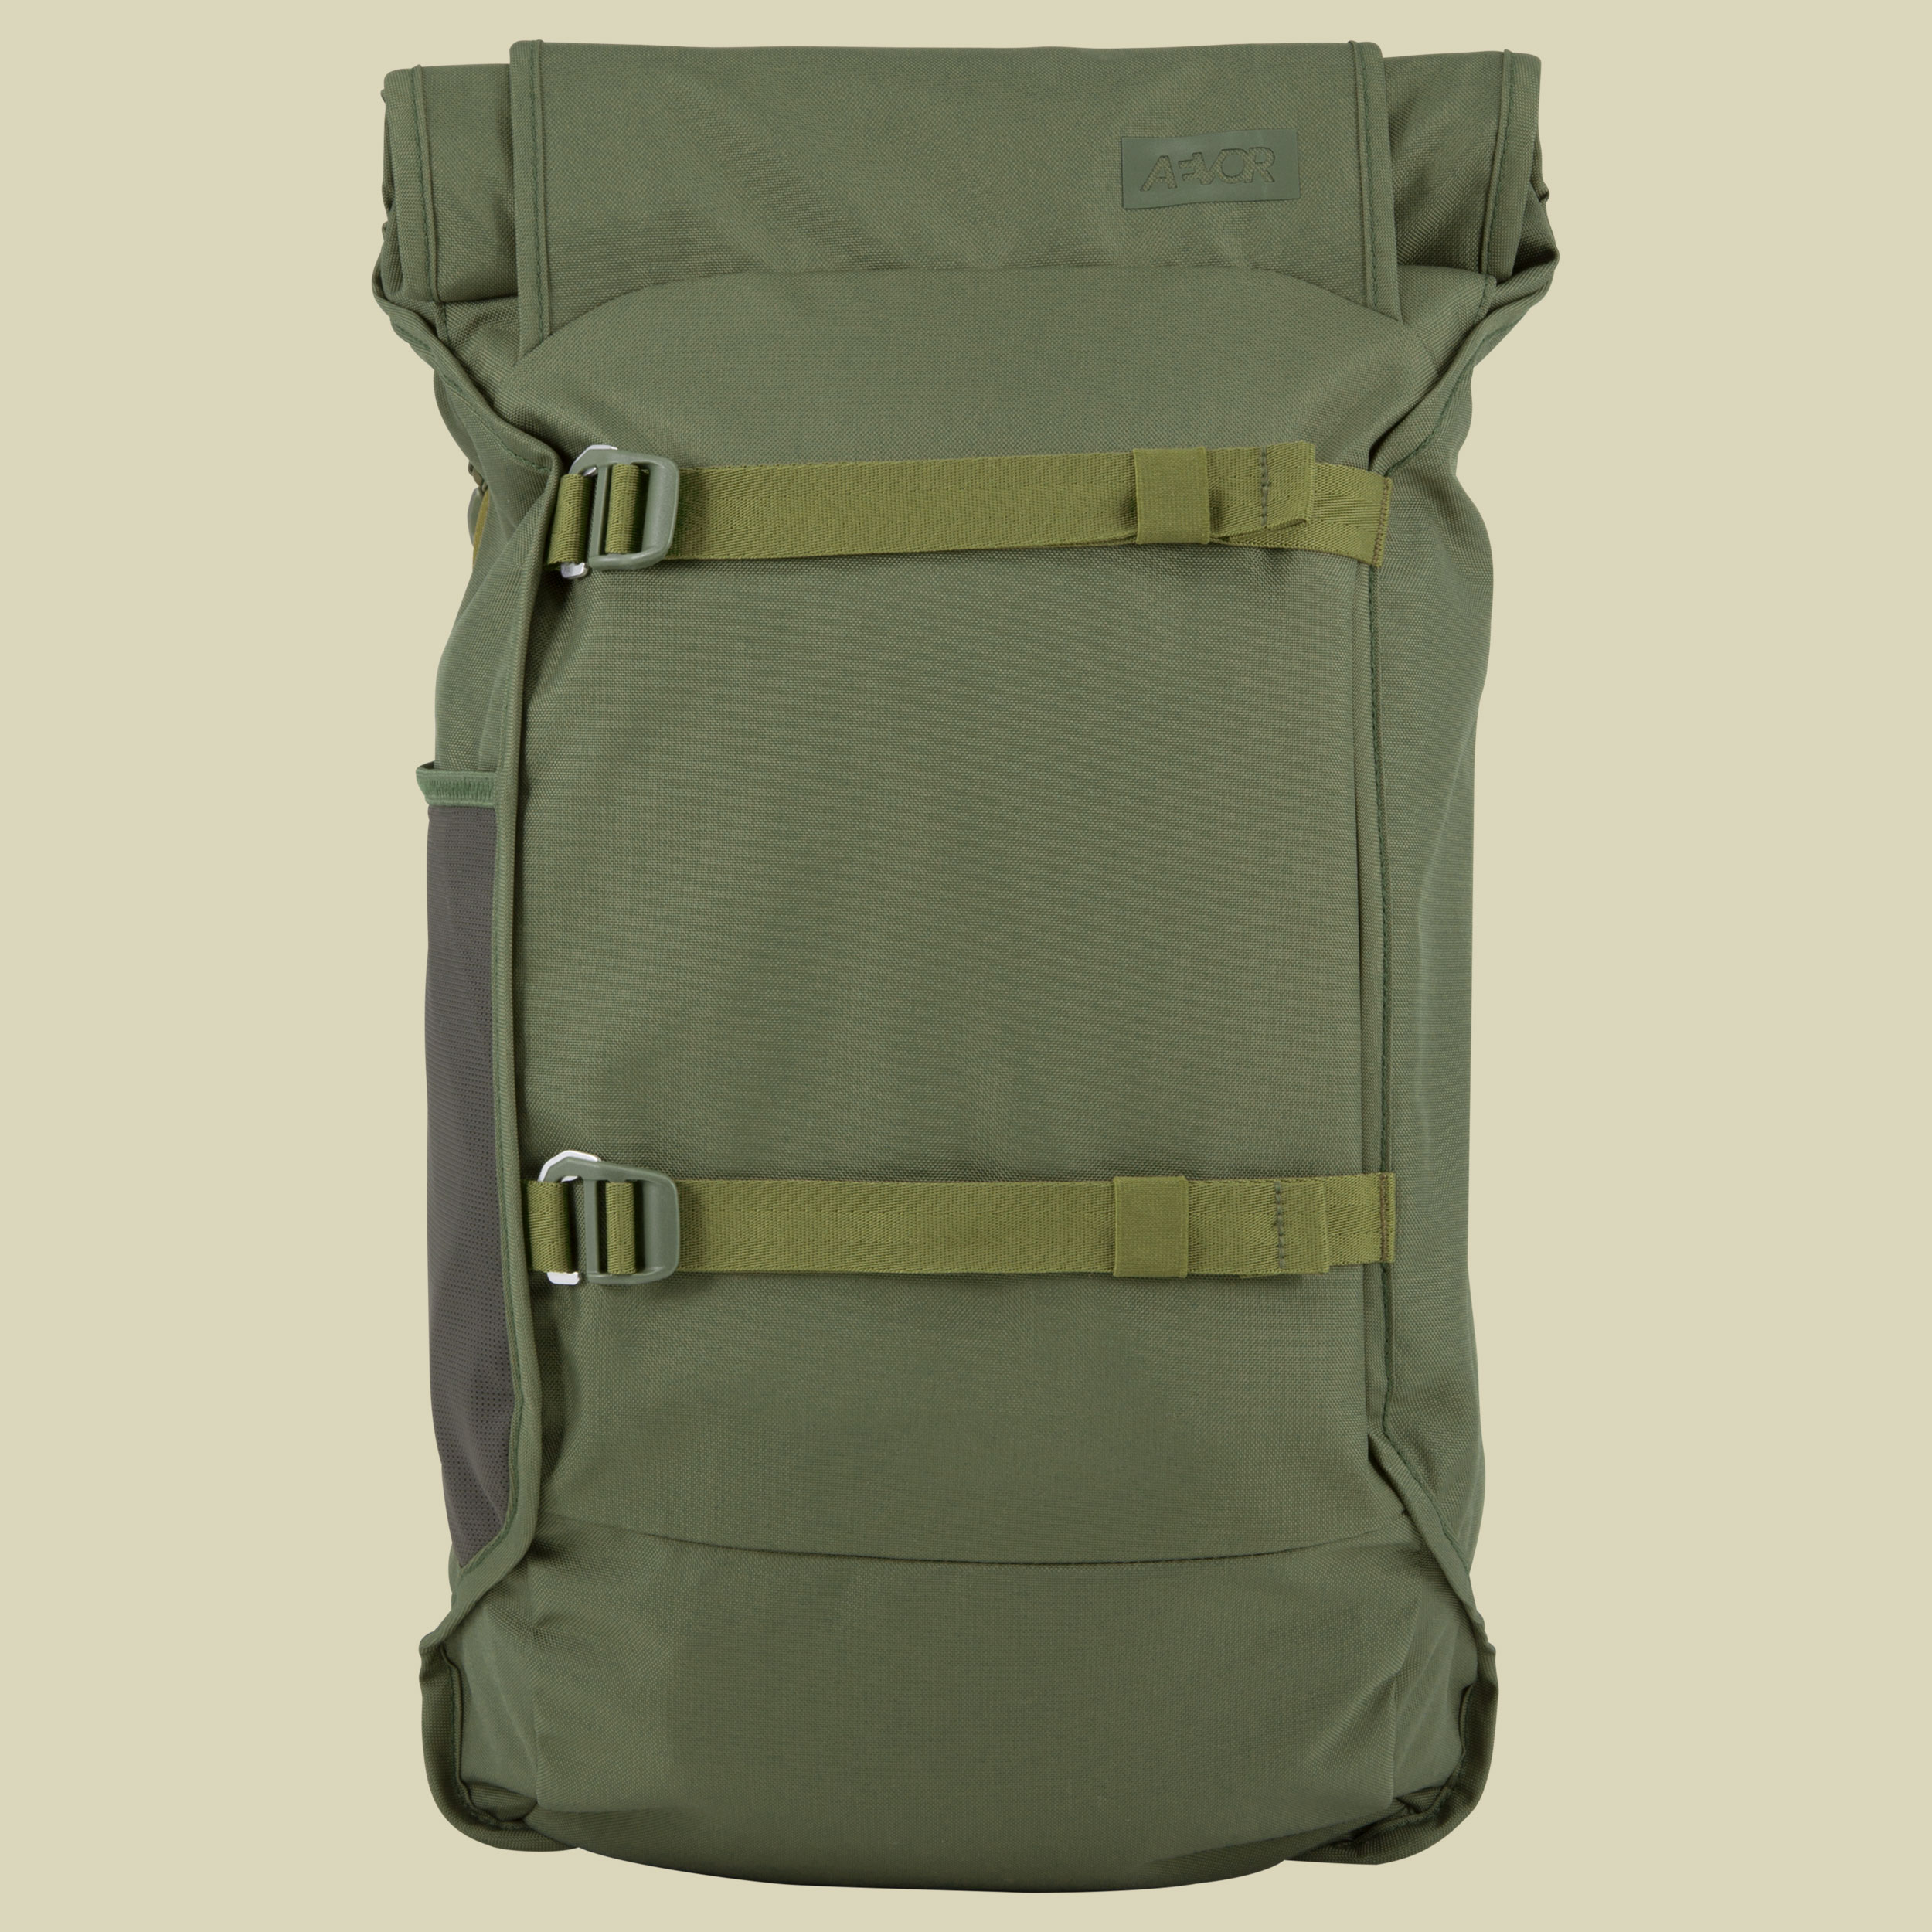 Aevor Backpack Trip Volumen 26 Farbe pine green